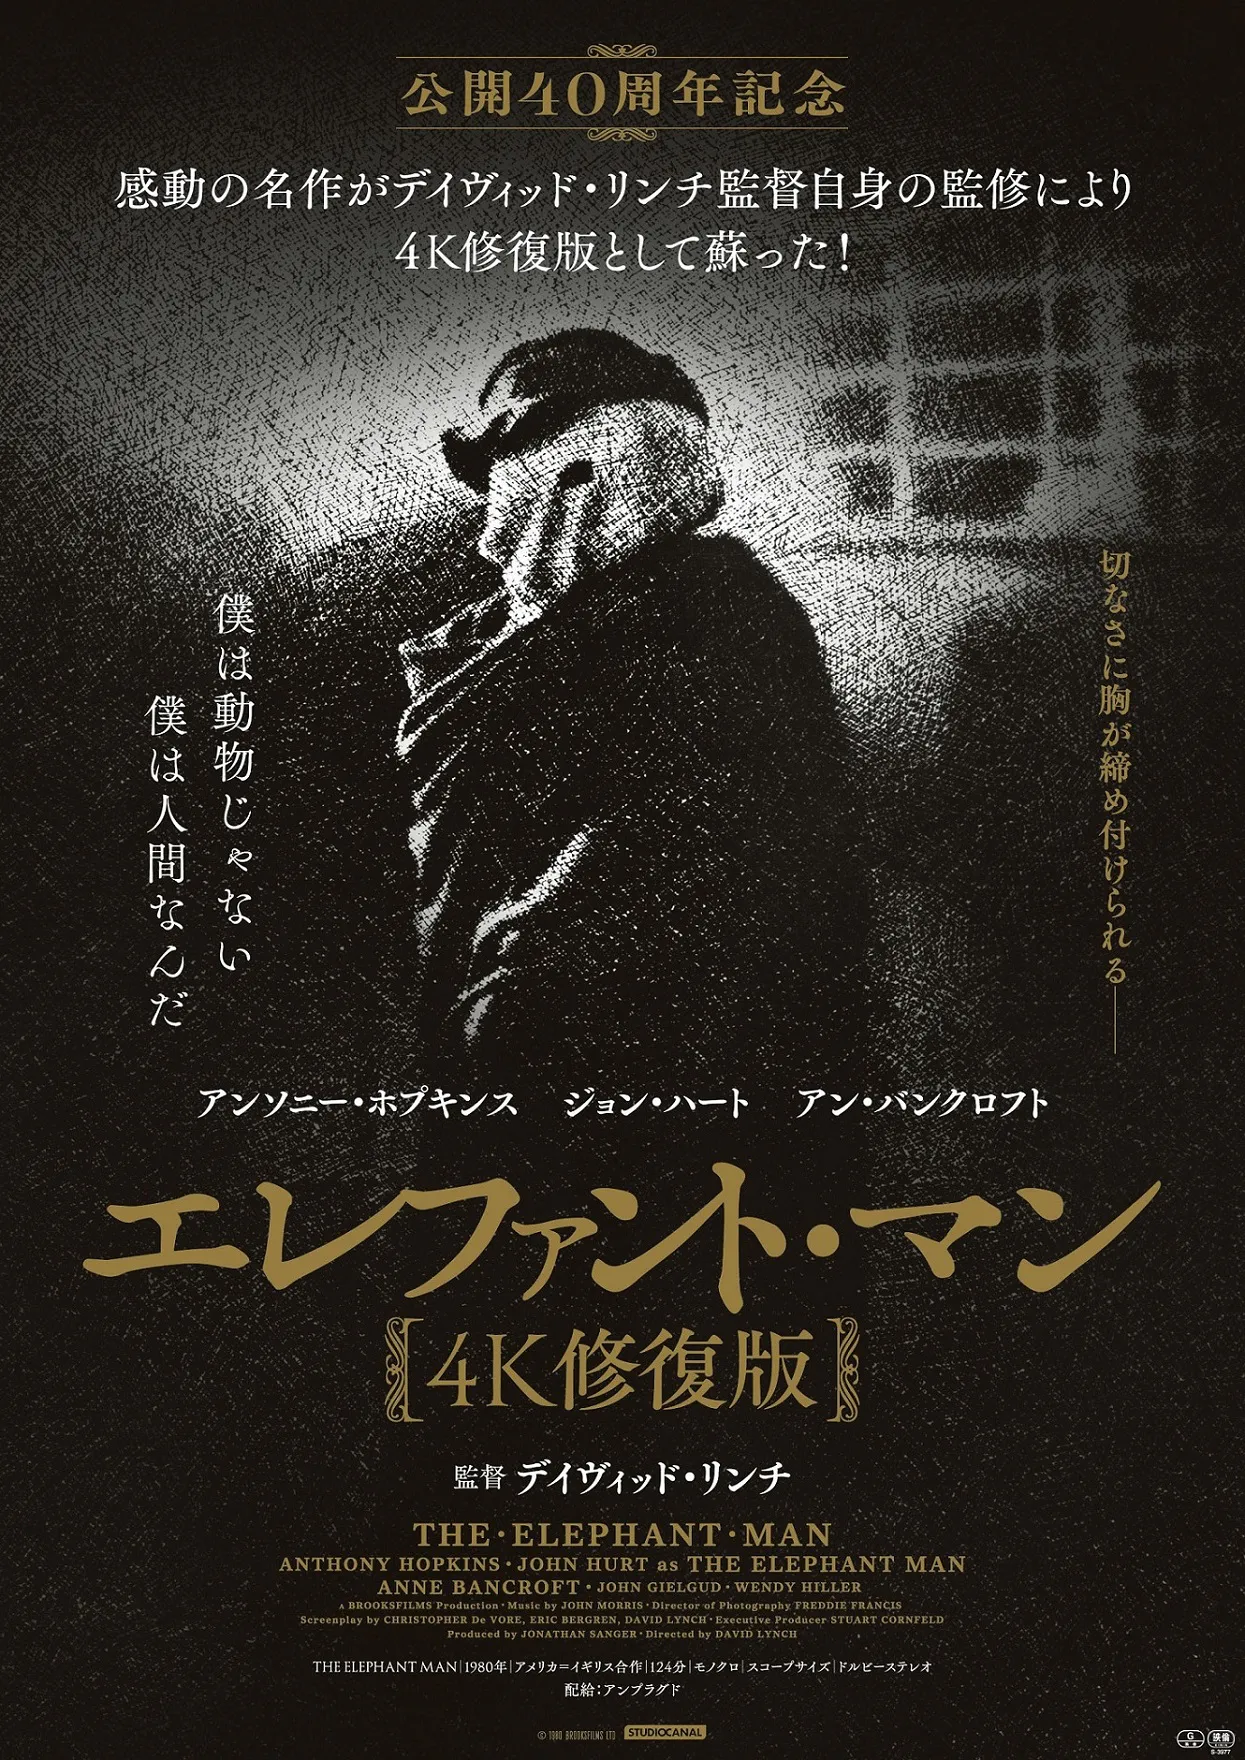  映画「エレファント・マン 4K修復版」ポスタービジュアル